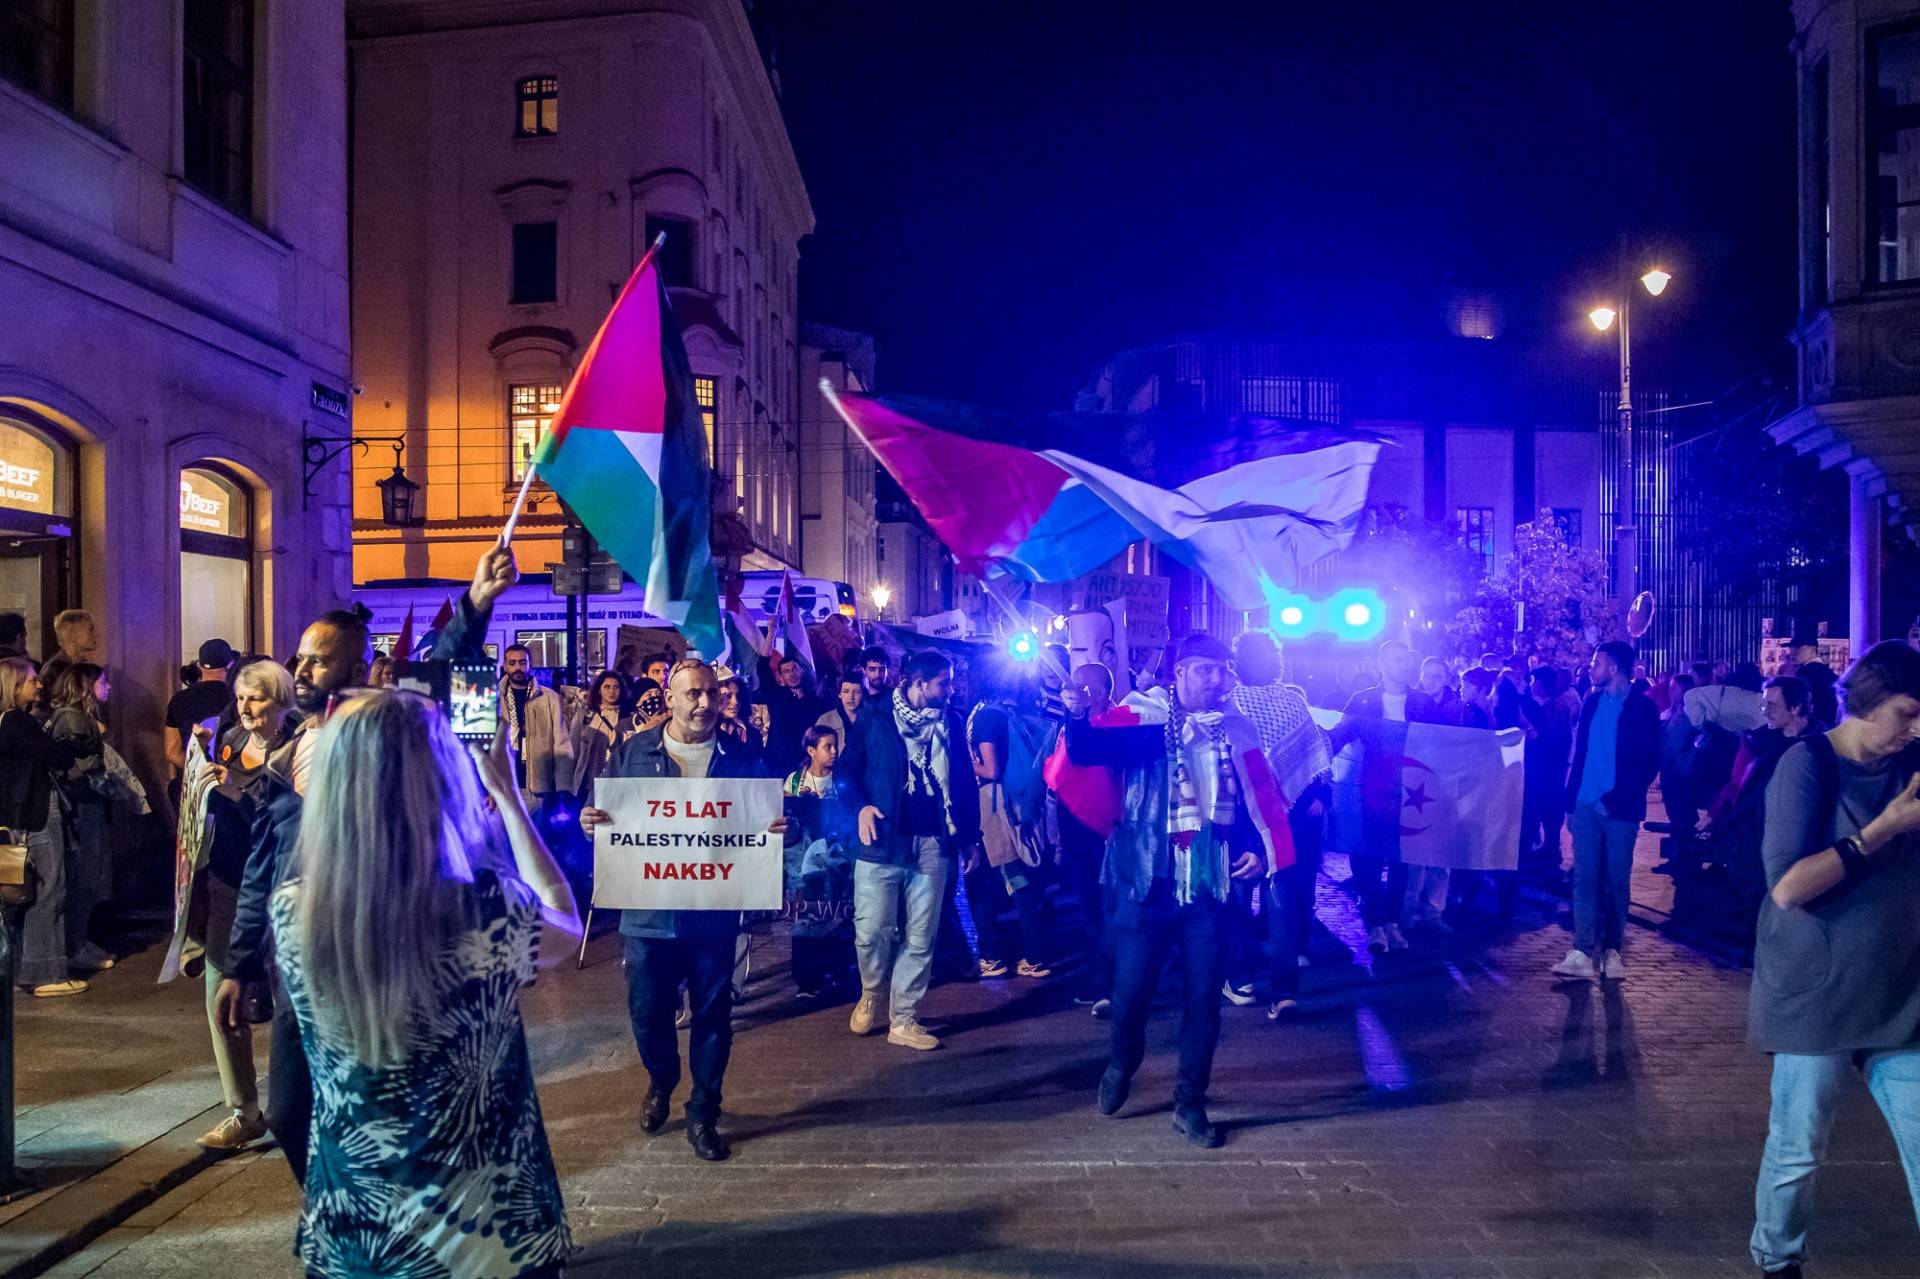 Palestyńczycy przeszli ulicami Krakowa, antyizraelski protest